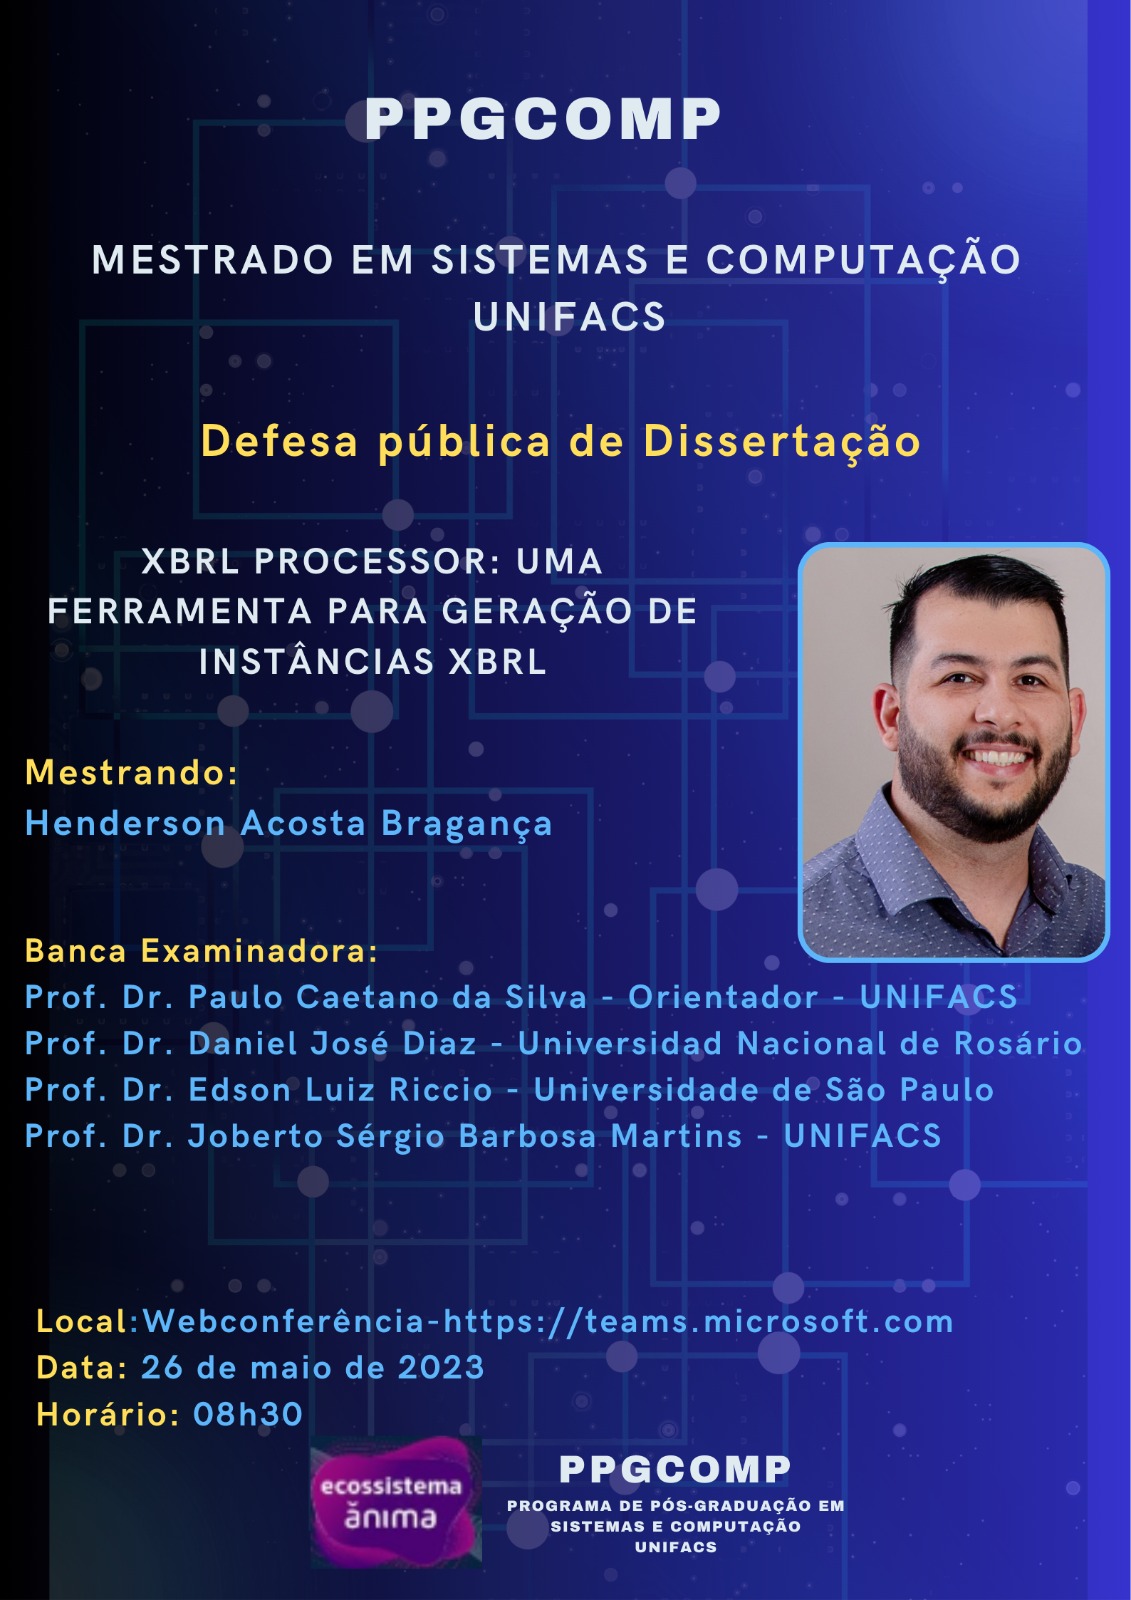 O servidor público da Câmara Municipal de Porto Velho recebeu no dia 26/05/2023 o grau de Mestre em Sistemas e Computação